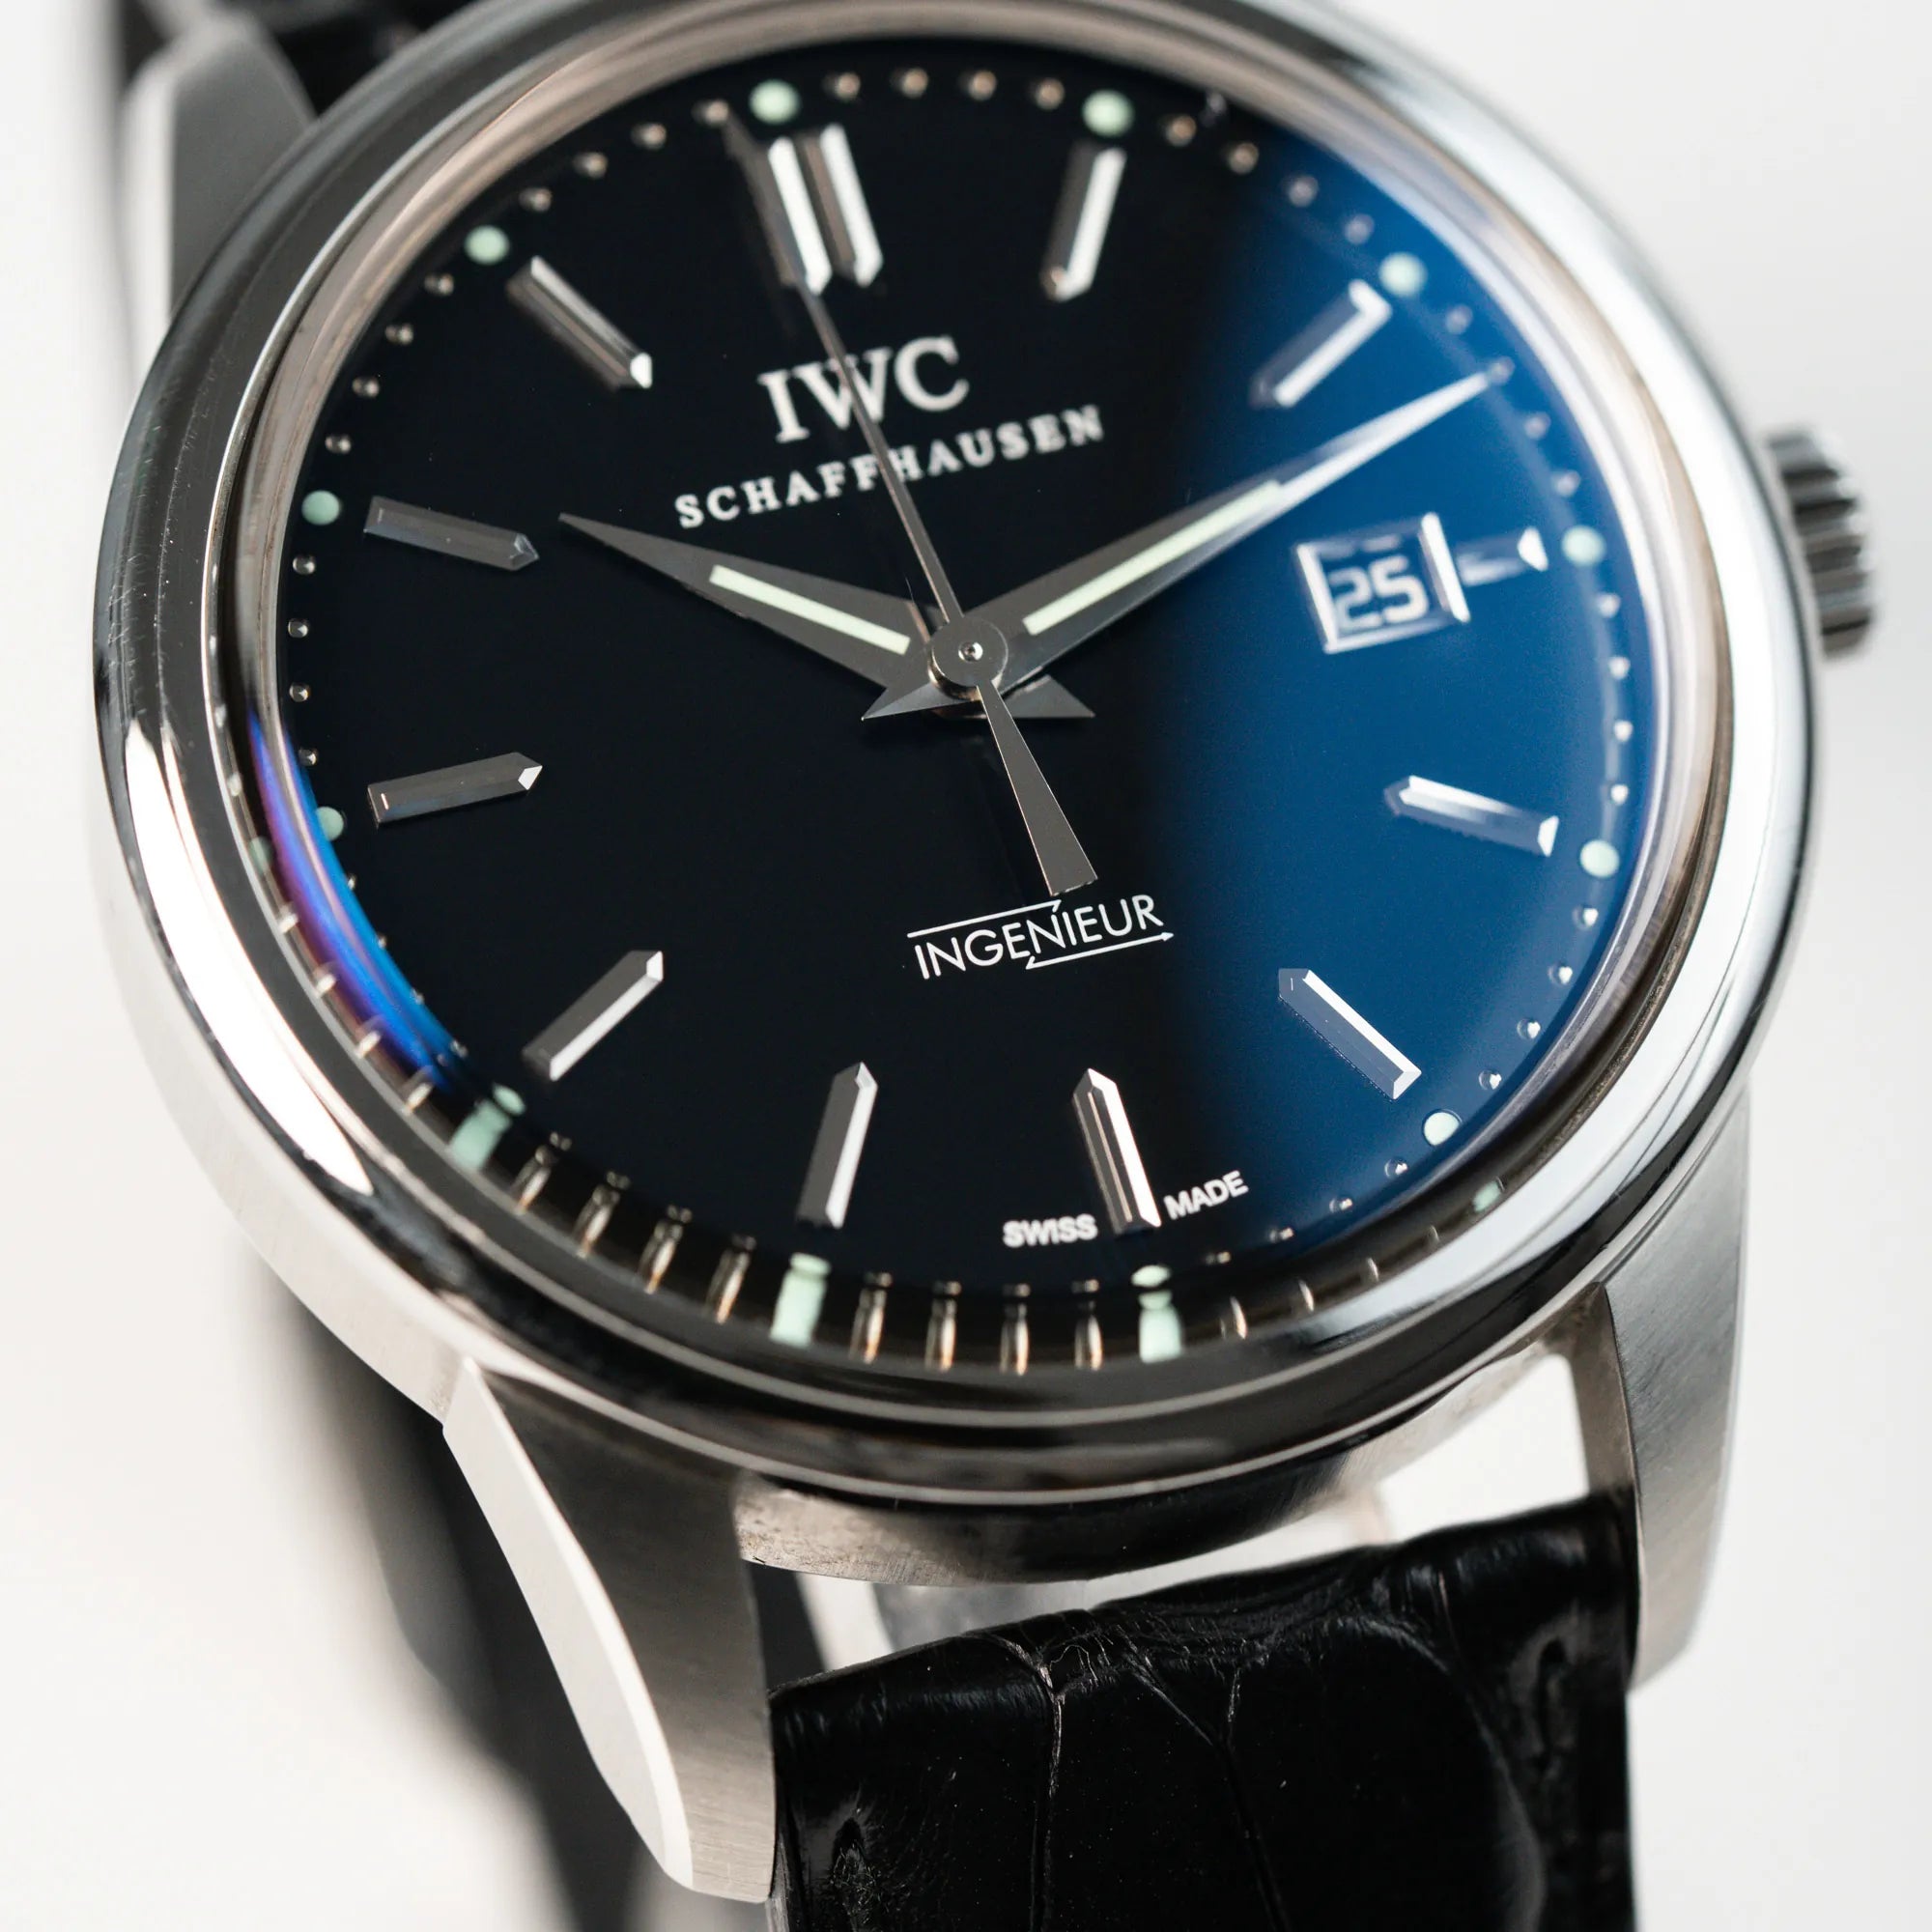 Makroaufnahme des schwarzen Zifferblatts der IWC Schaffhausen Uhr "Ingenieur" mit der Referenz IW323301